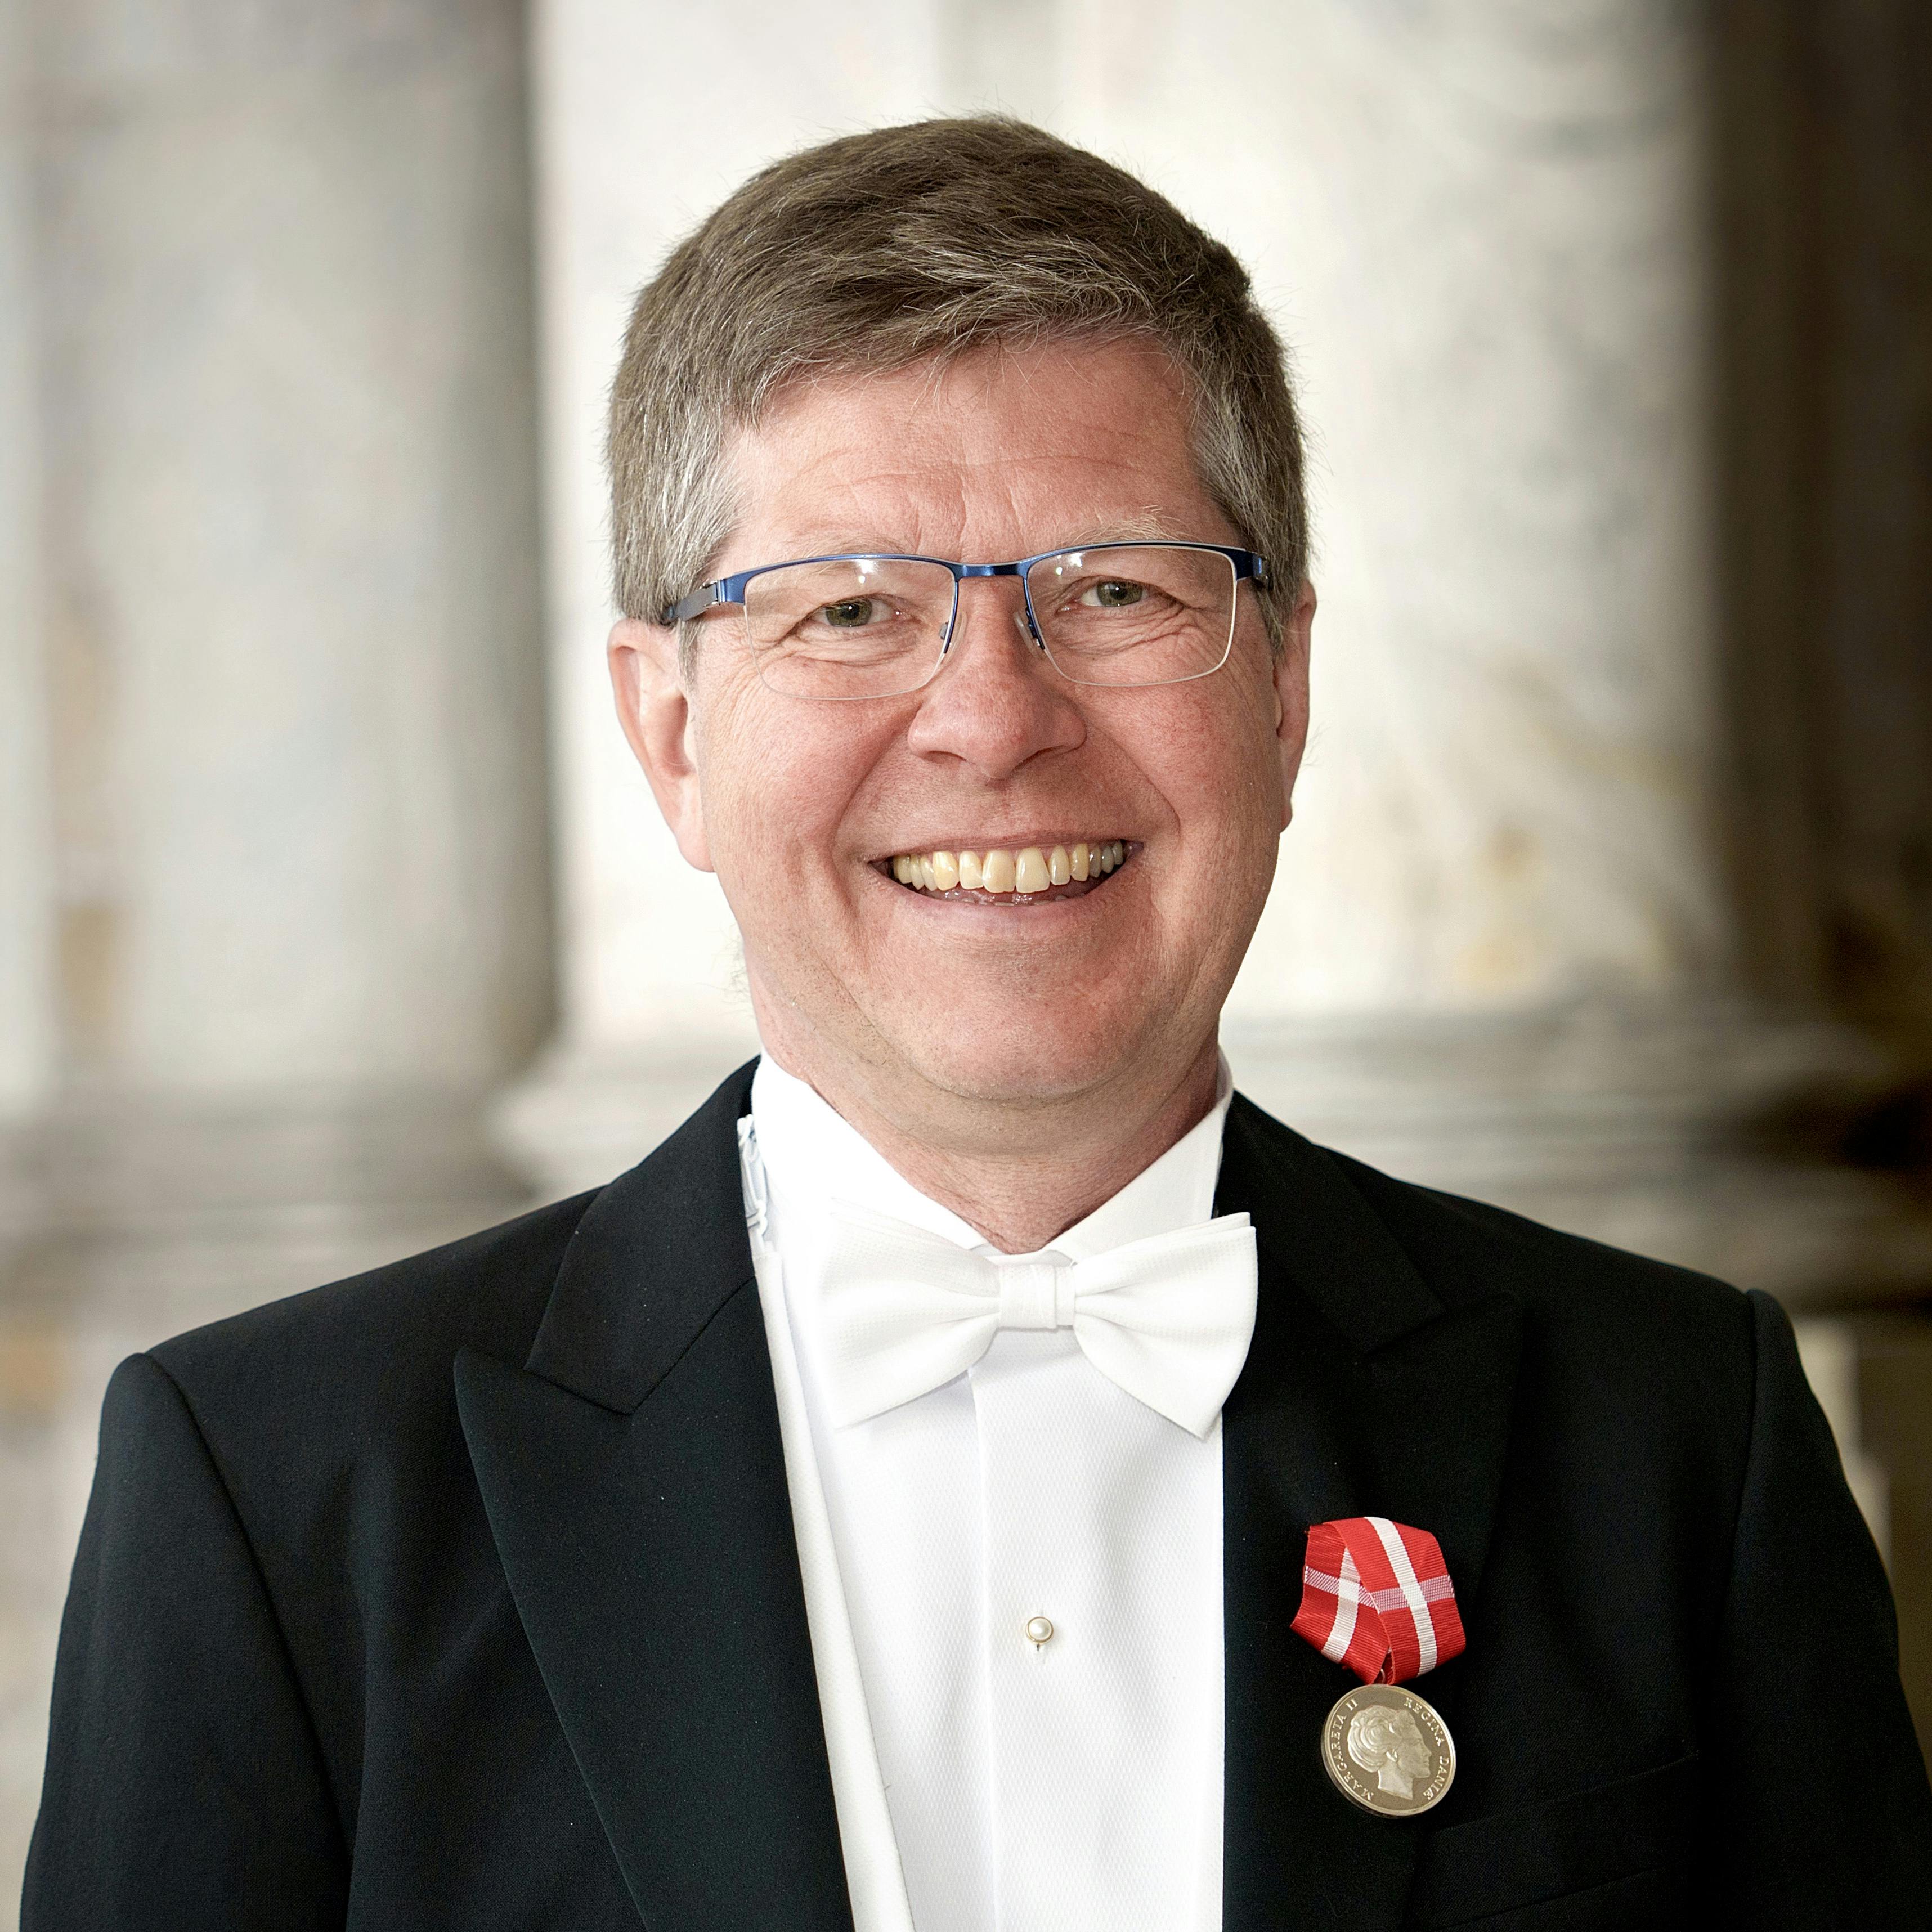 Fagkonsulent i Toldstyrelsen Henrik Thuesen, Hillerød, takkede for fortjenstmedaljen.
